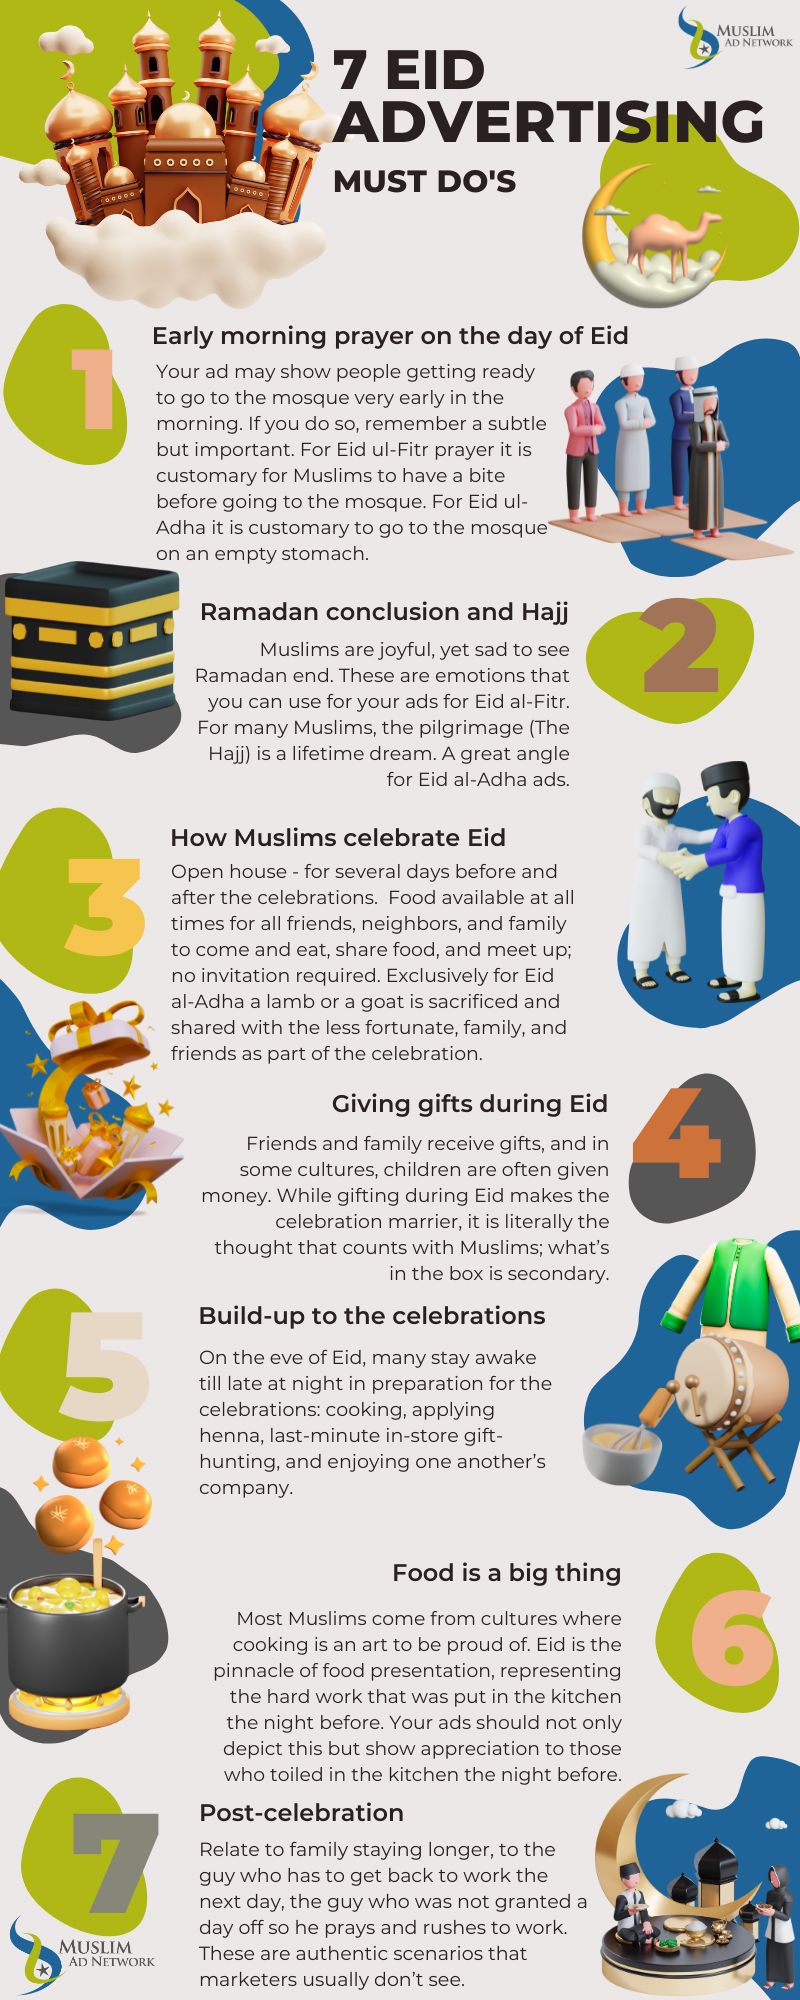 tips for eid advertising